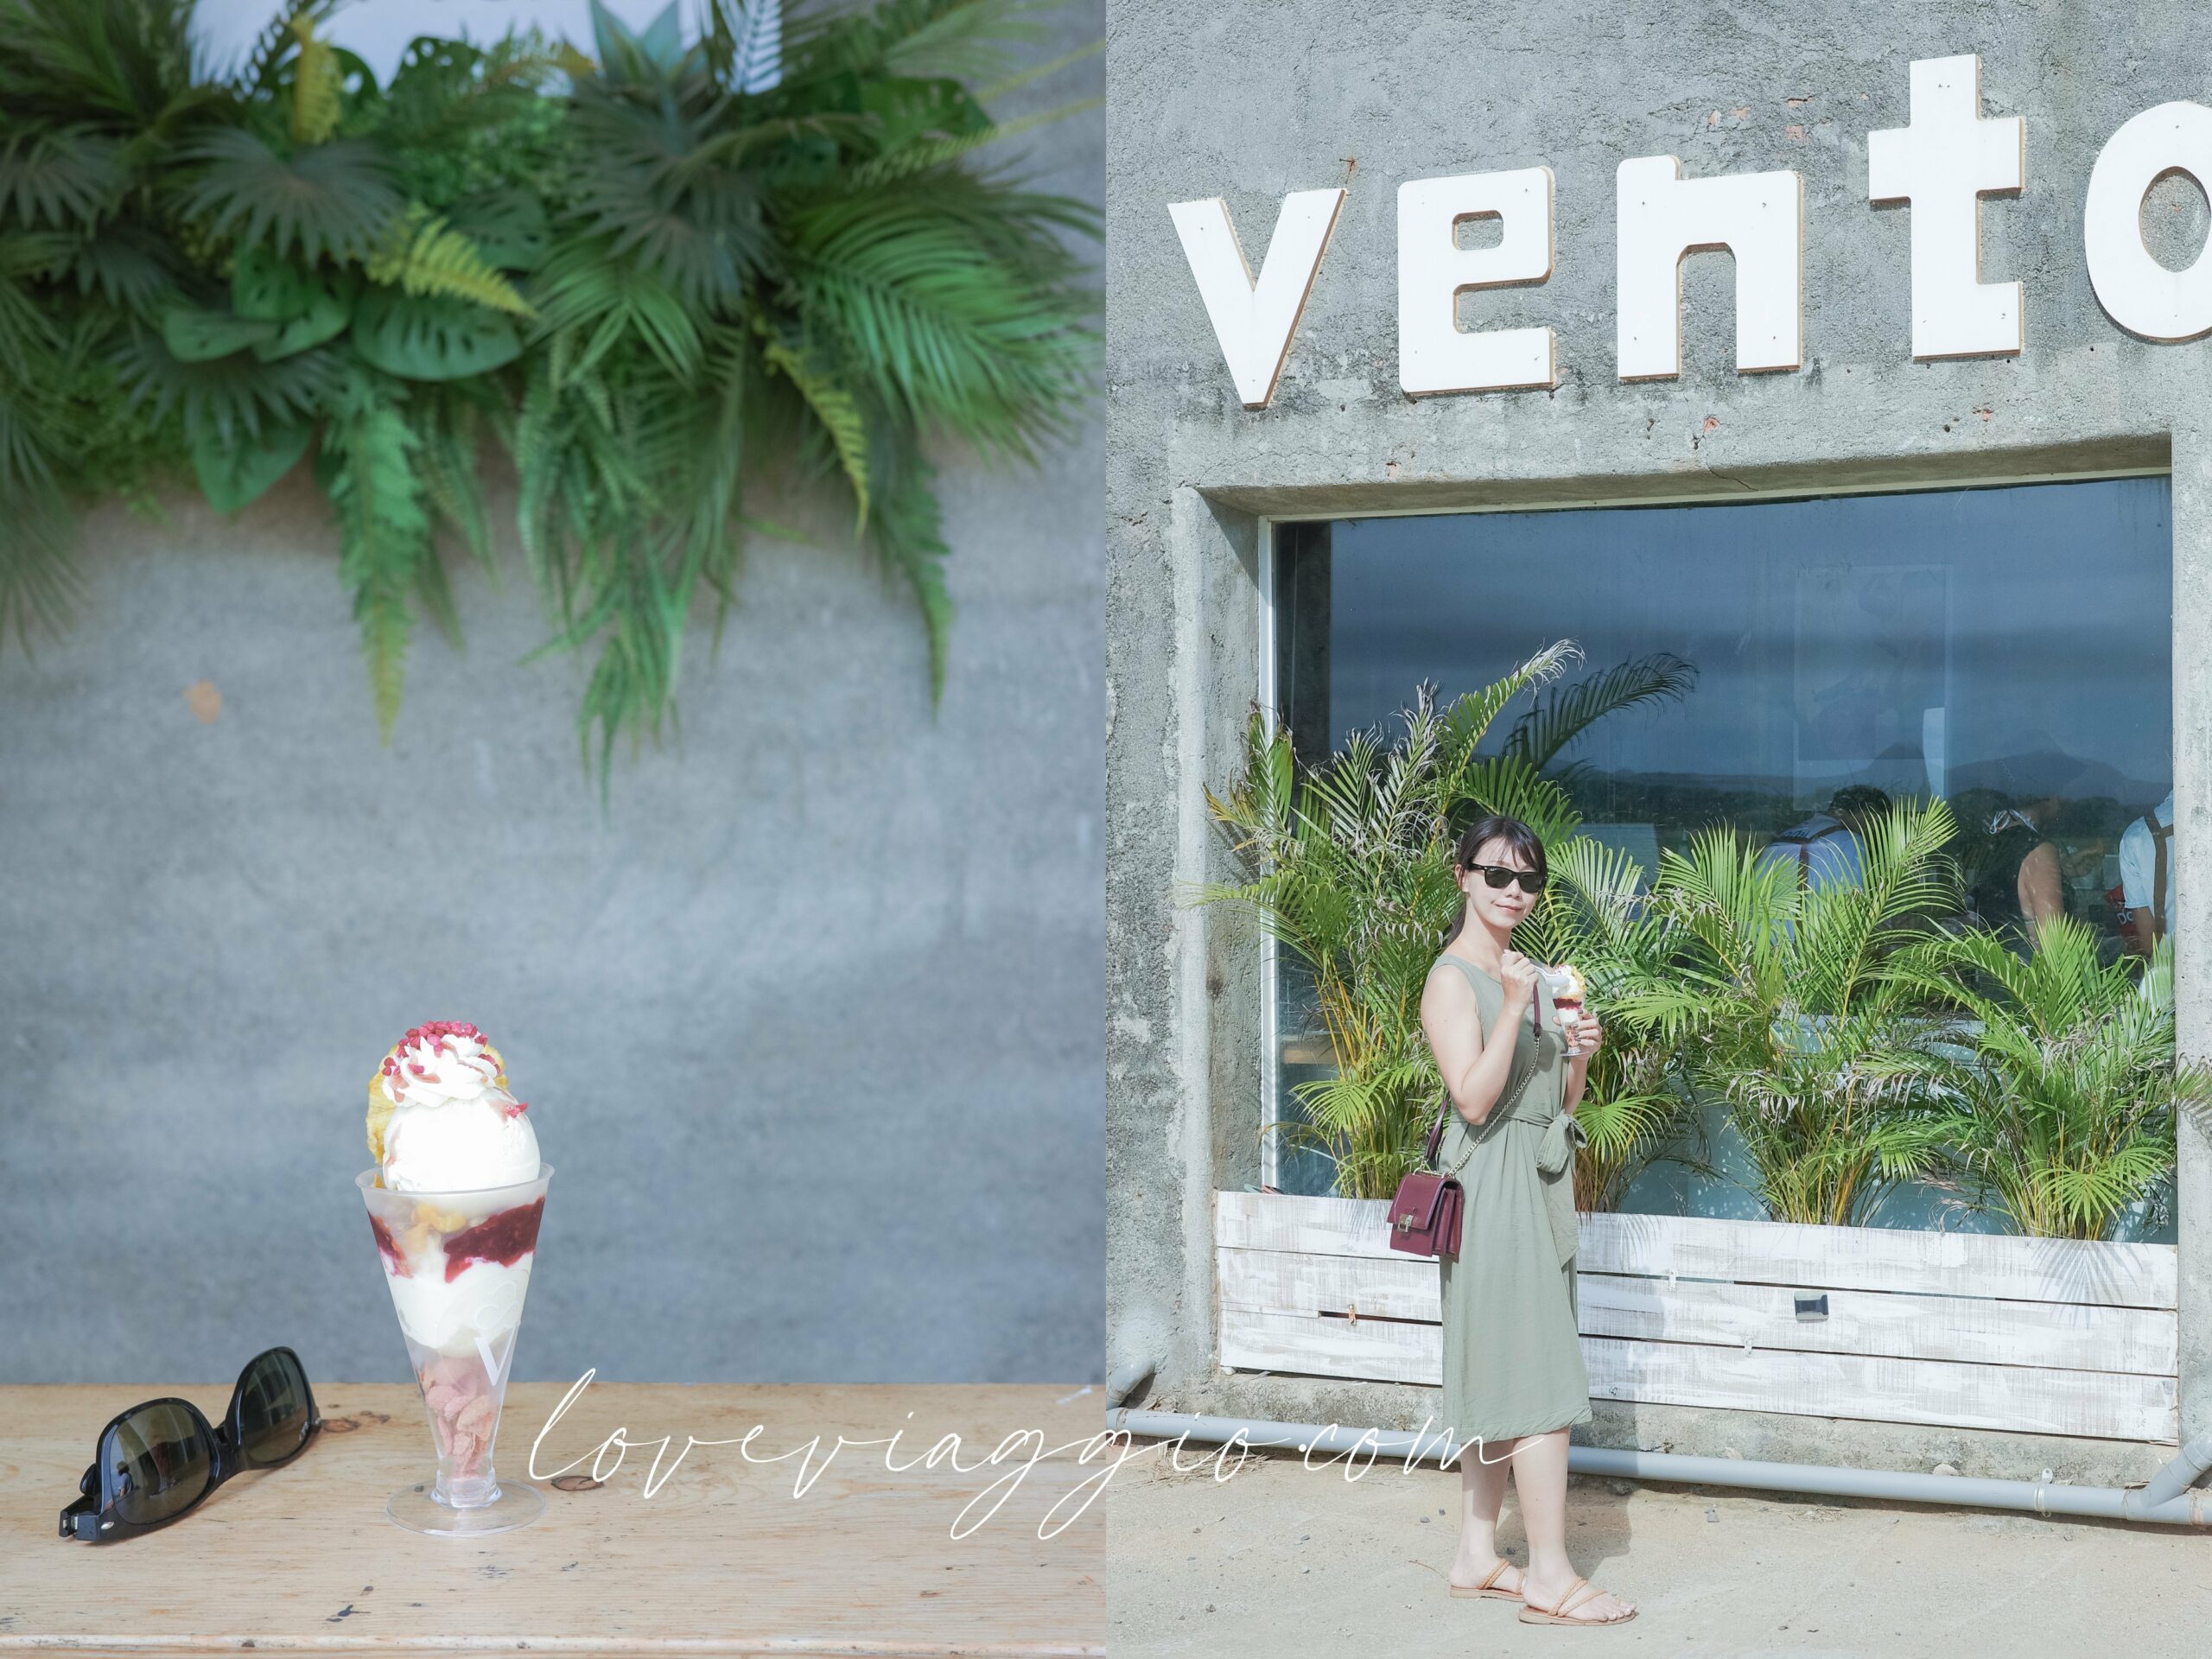 威尼斯海灘,小琉球,環島,瓶岩,美人洞 @薇樂莉 旅行.生活.攝影